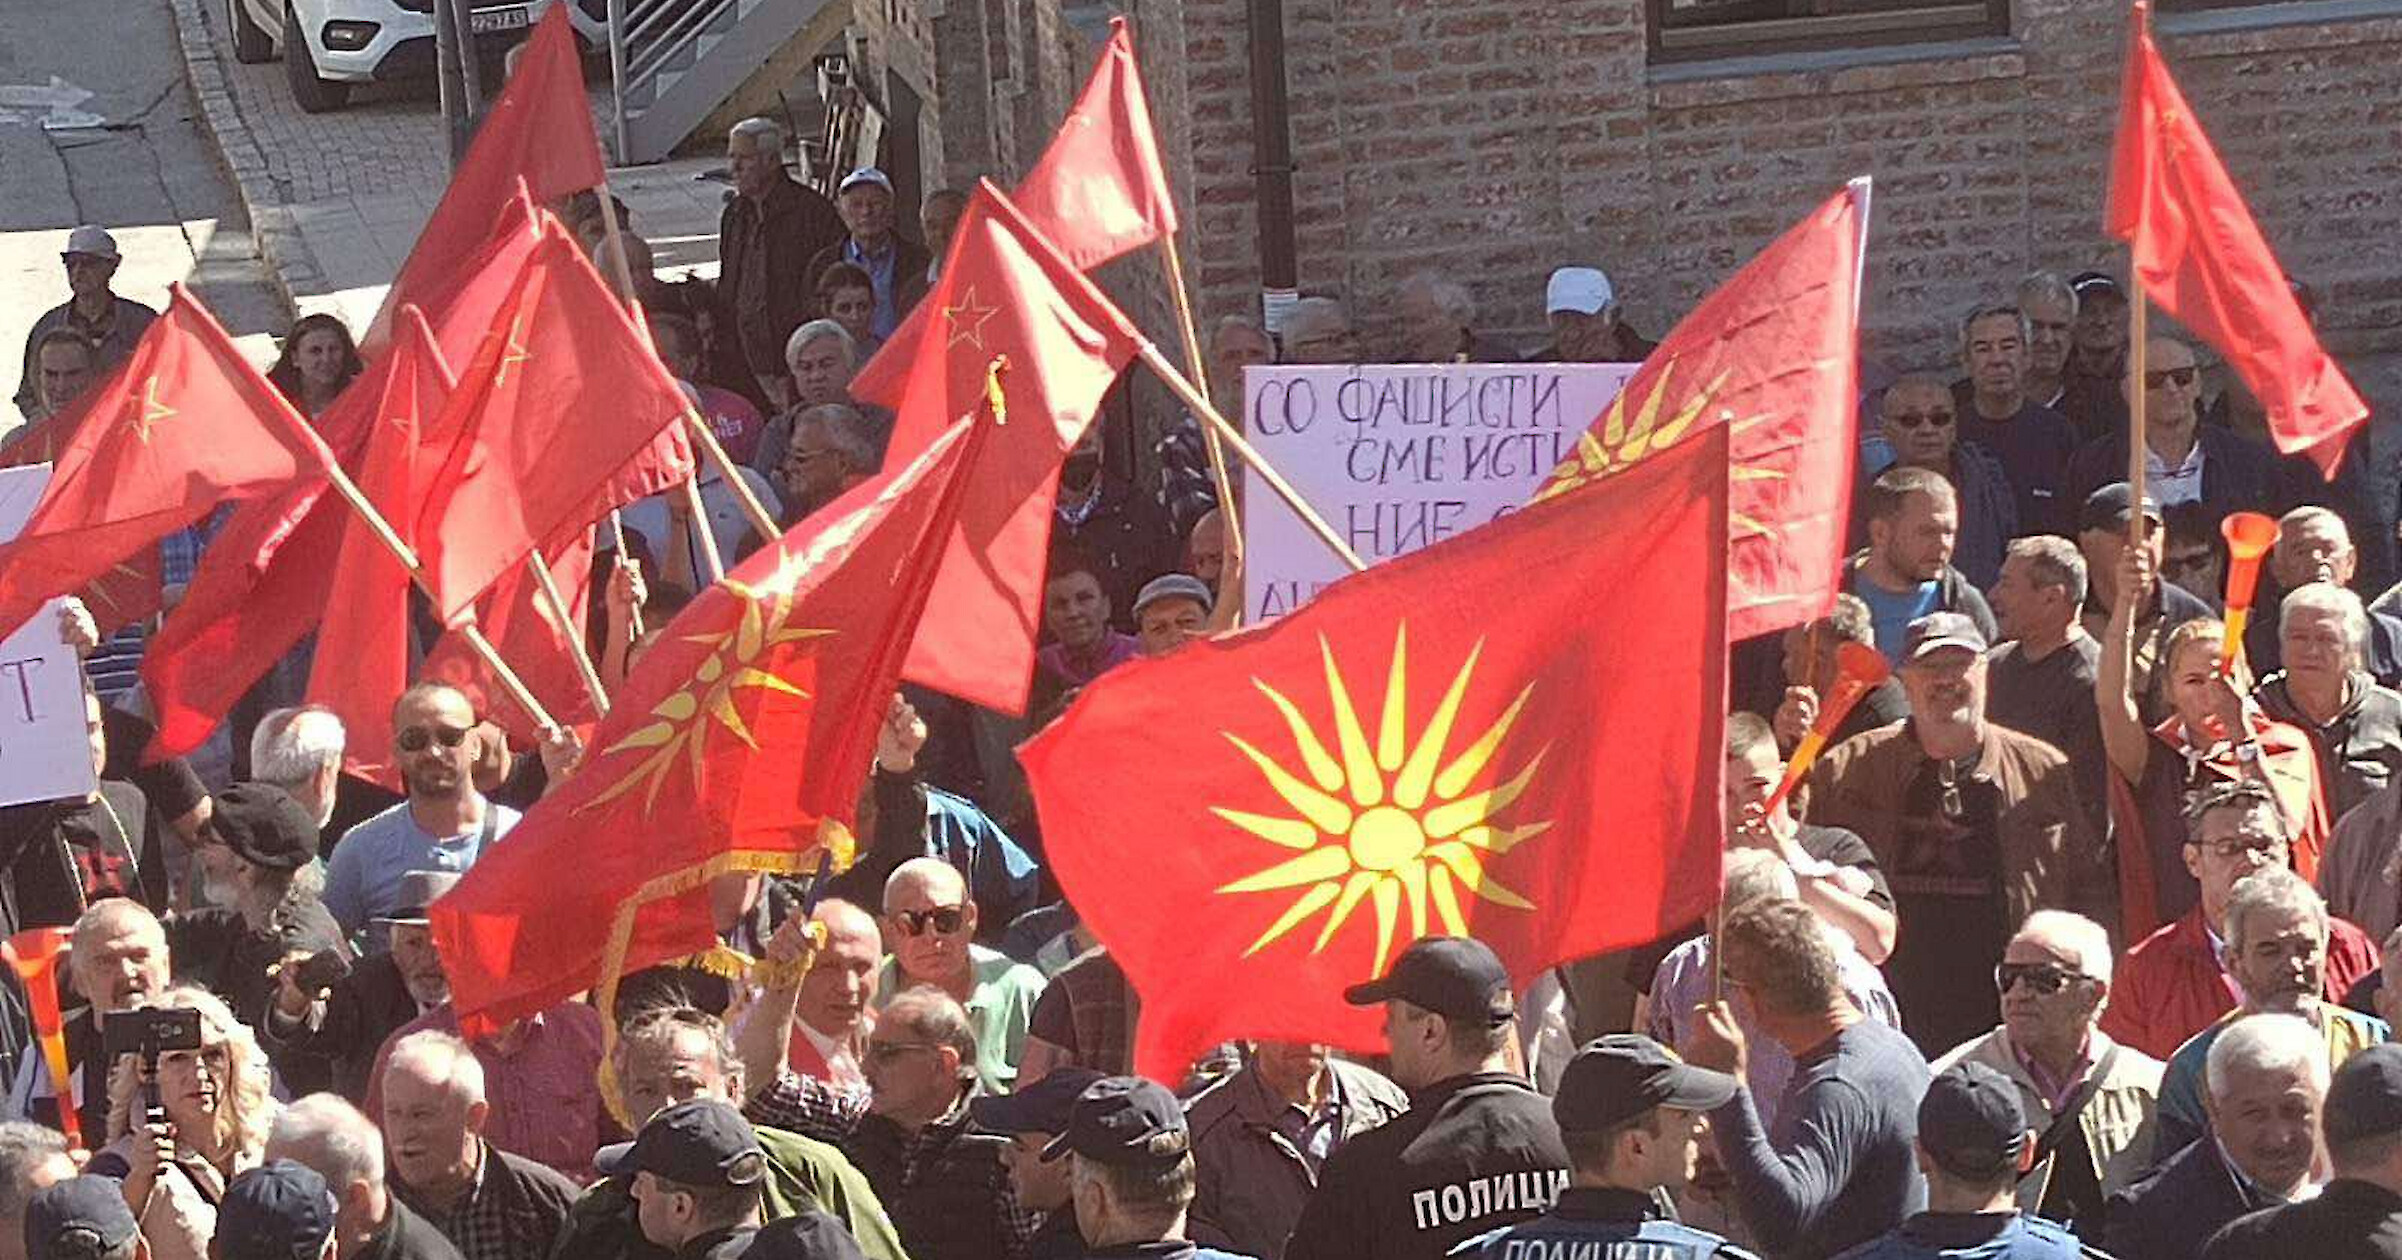 Няколкостотин души скандират българи татари и фашисти пред сградата в